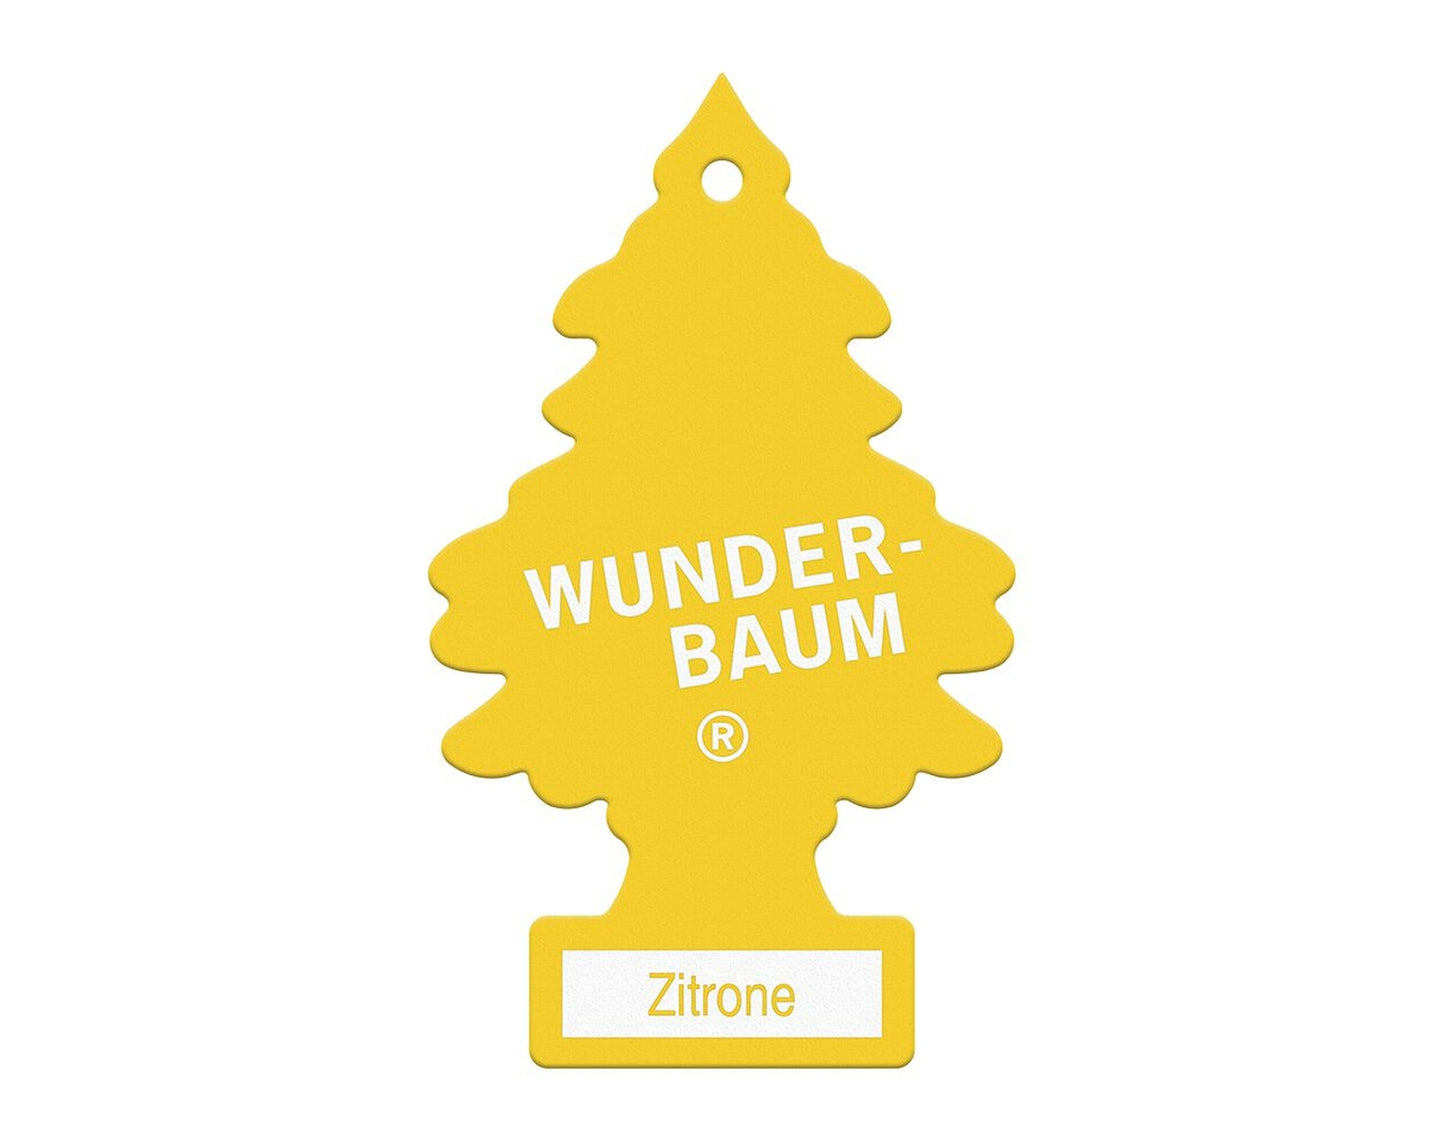 WUNDER-BAUM Zitrone